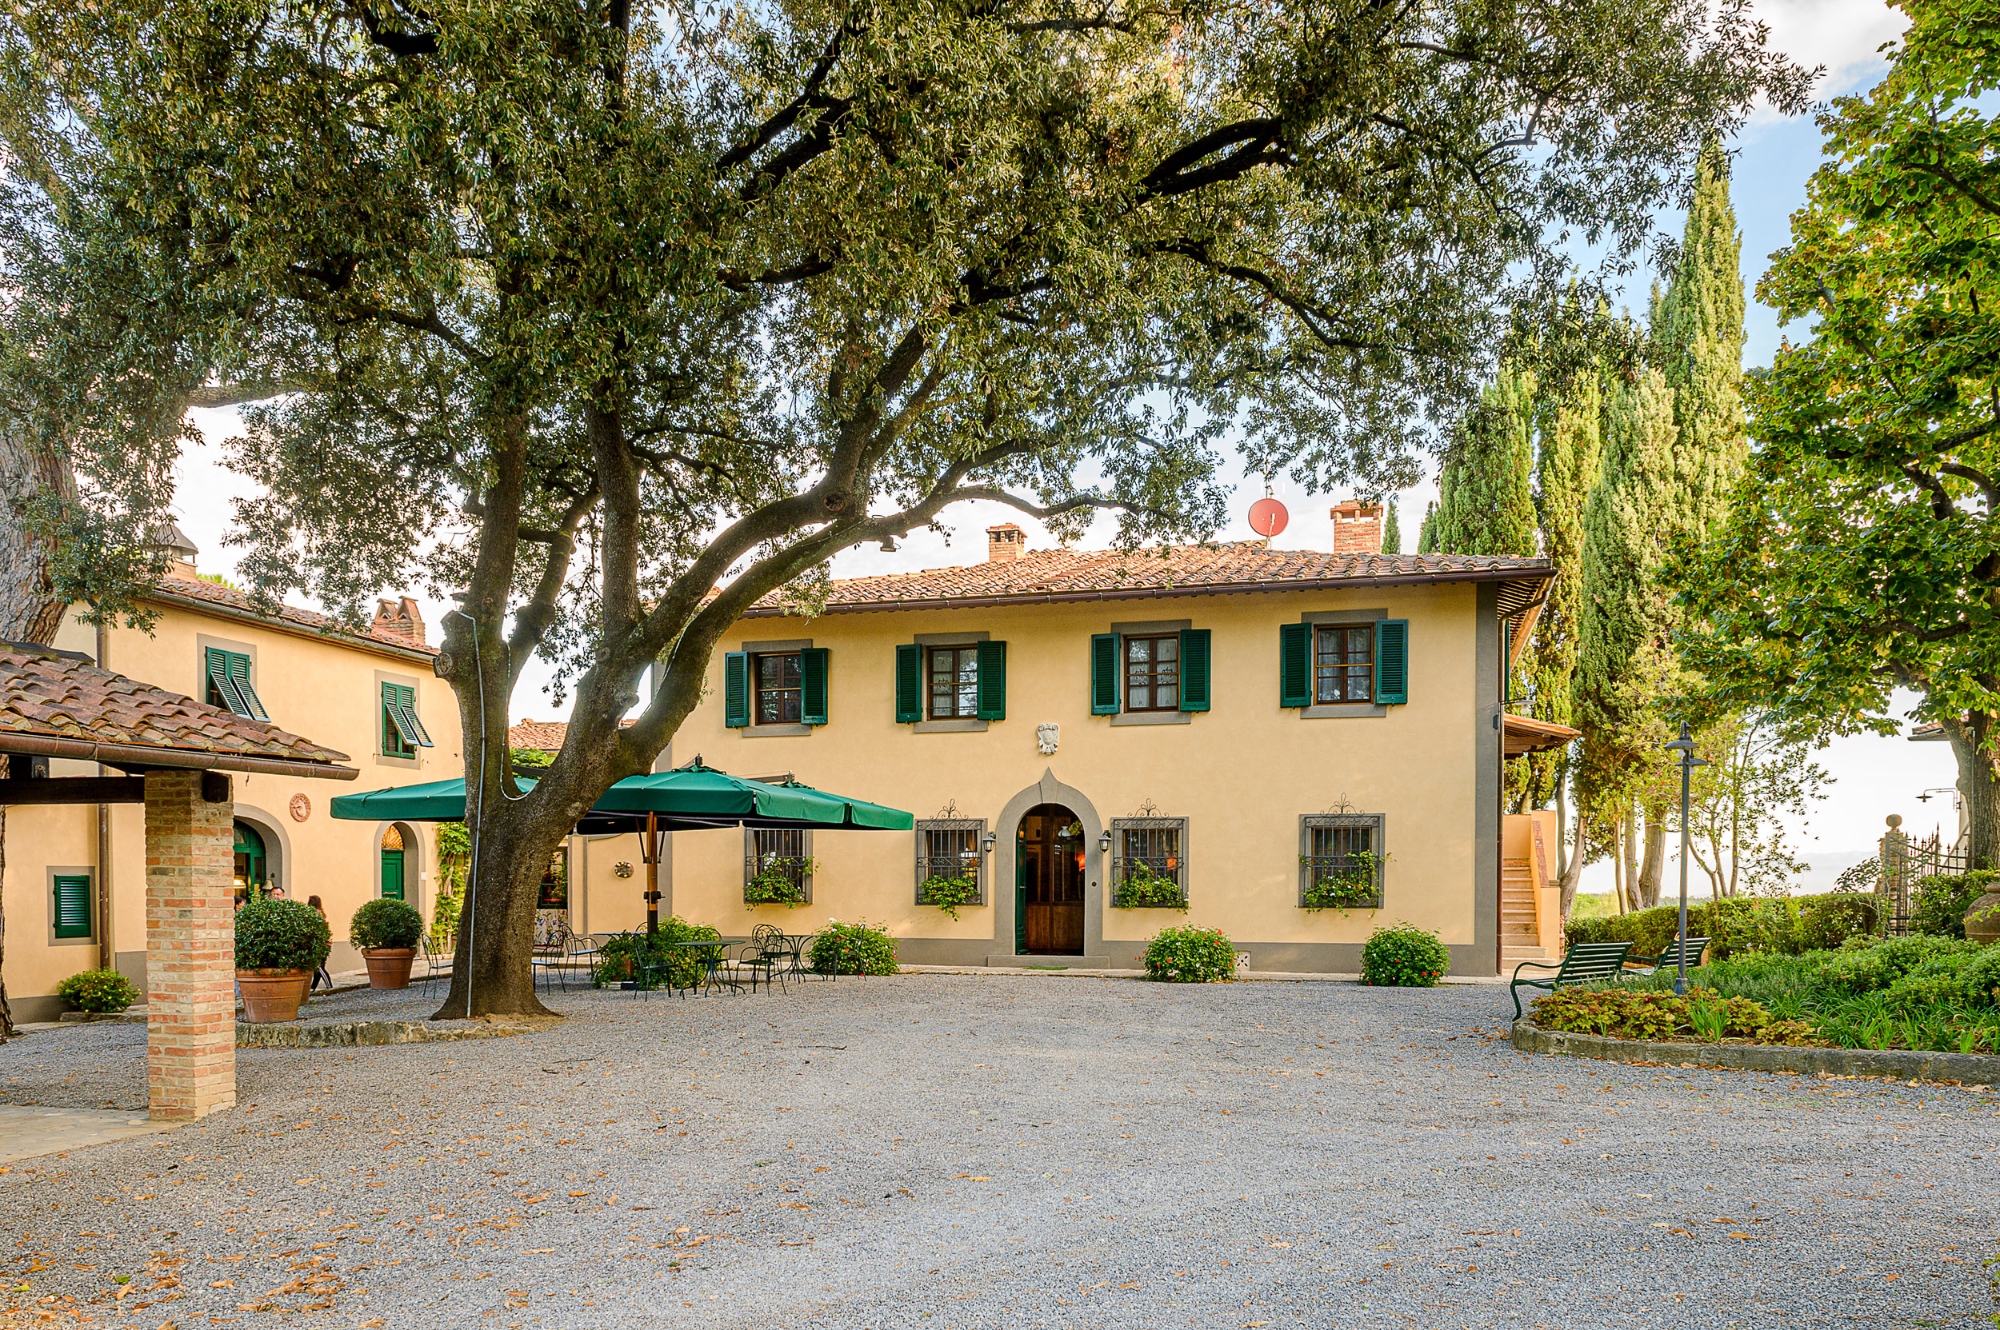 Villa Delia Hotel in Tuscany